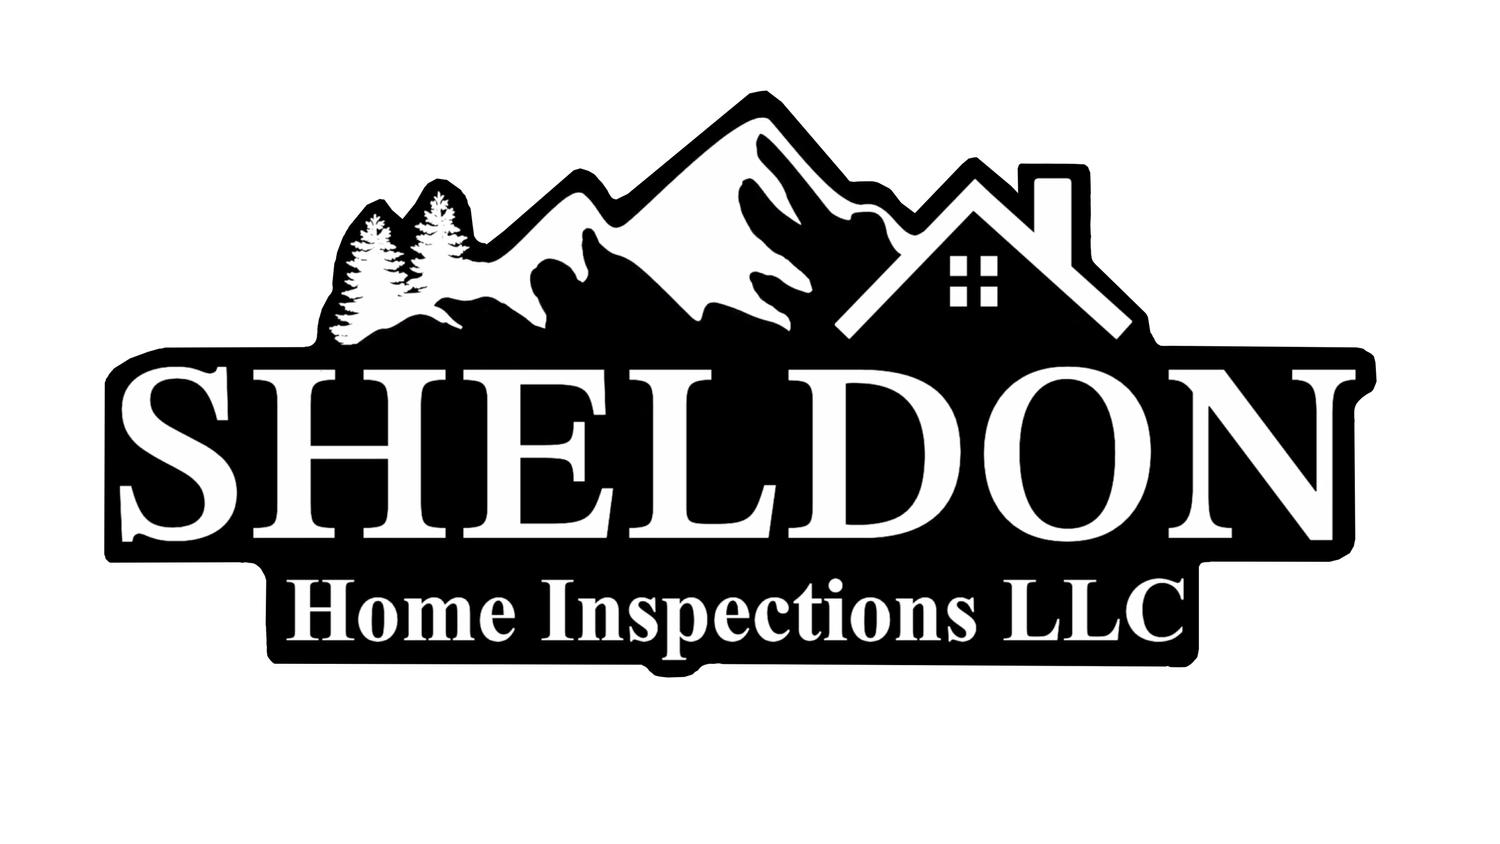 SHELDON HOME INSPECTIONS LLC